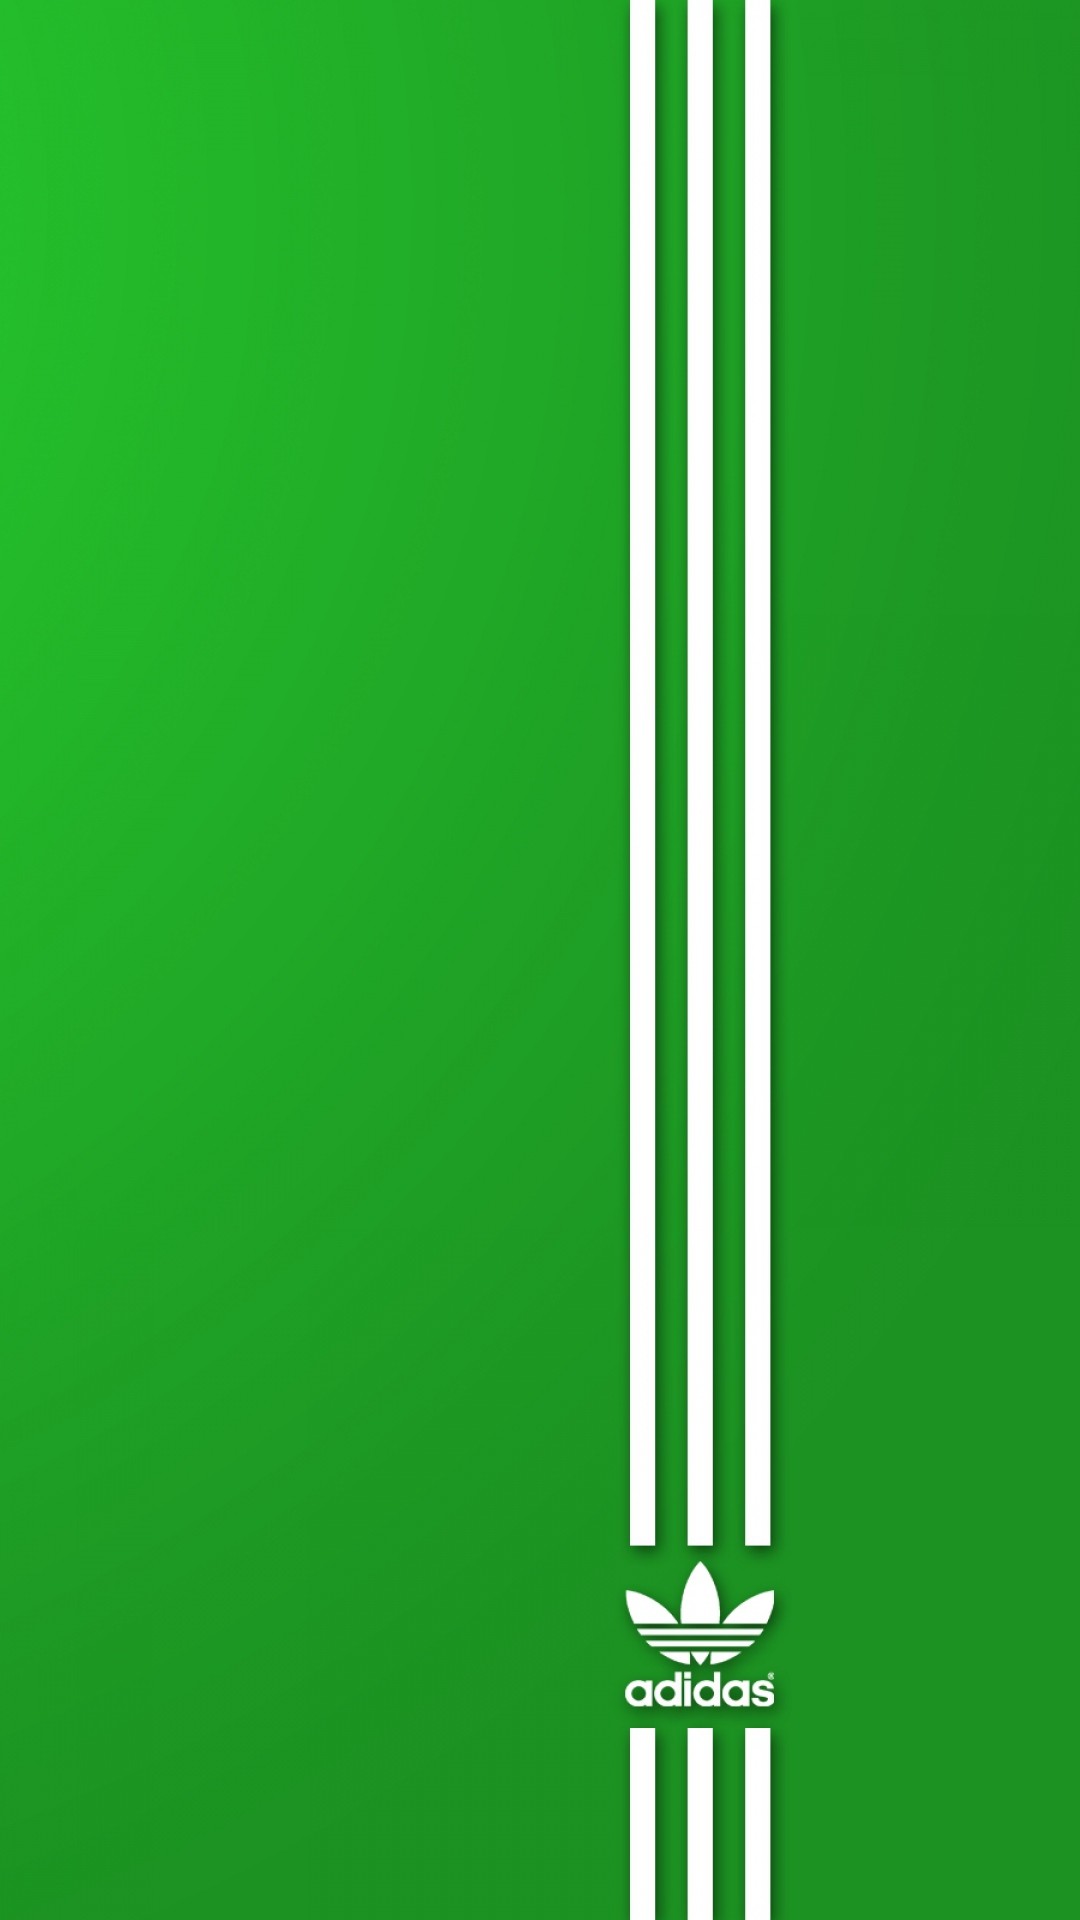 Adidas Wallpaper Green - green adidas wallpaper roblox